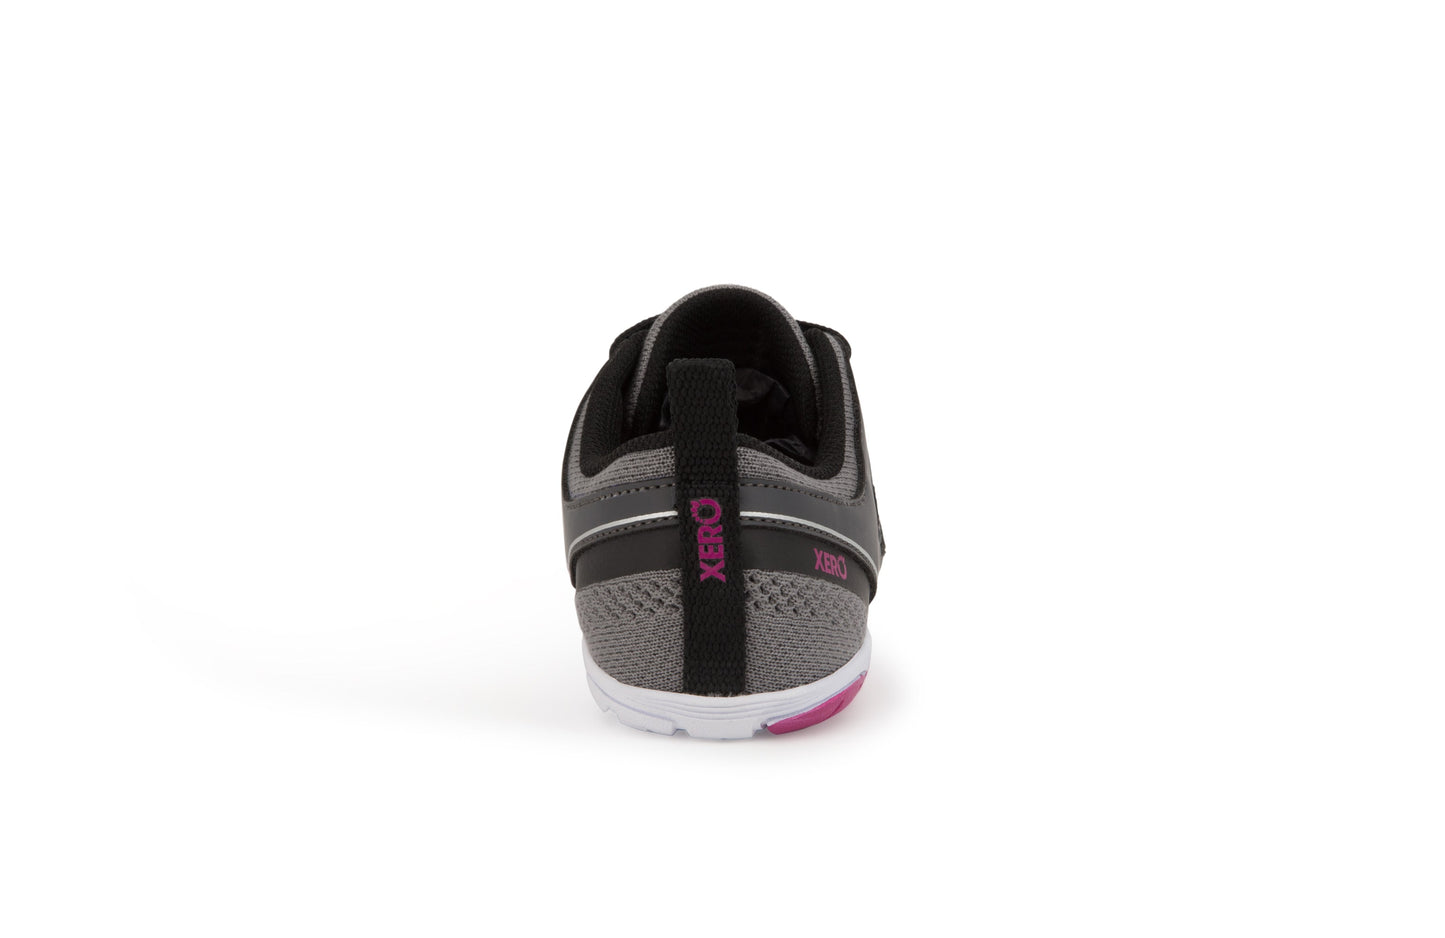 Xero Shoes Zelen Womens barfods træningssko til kvinder i farven steel gray / fuchsia, bagfra